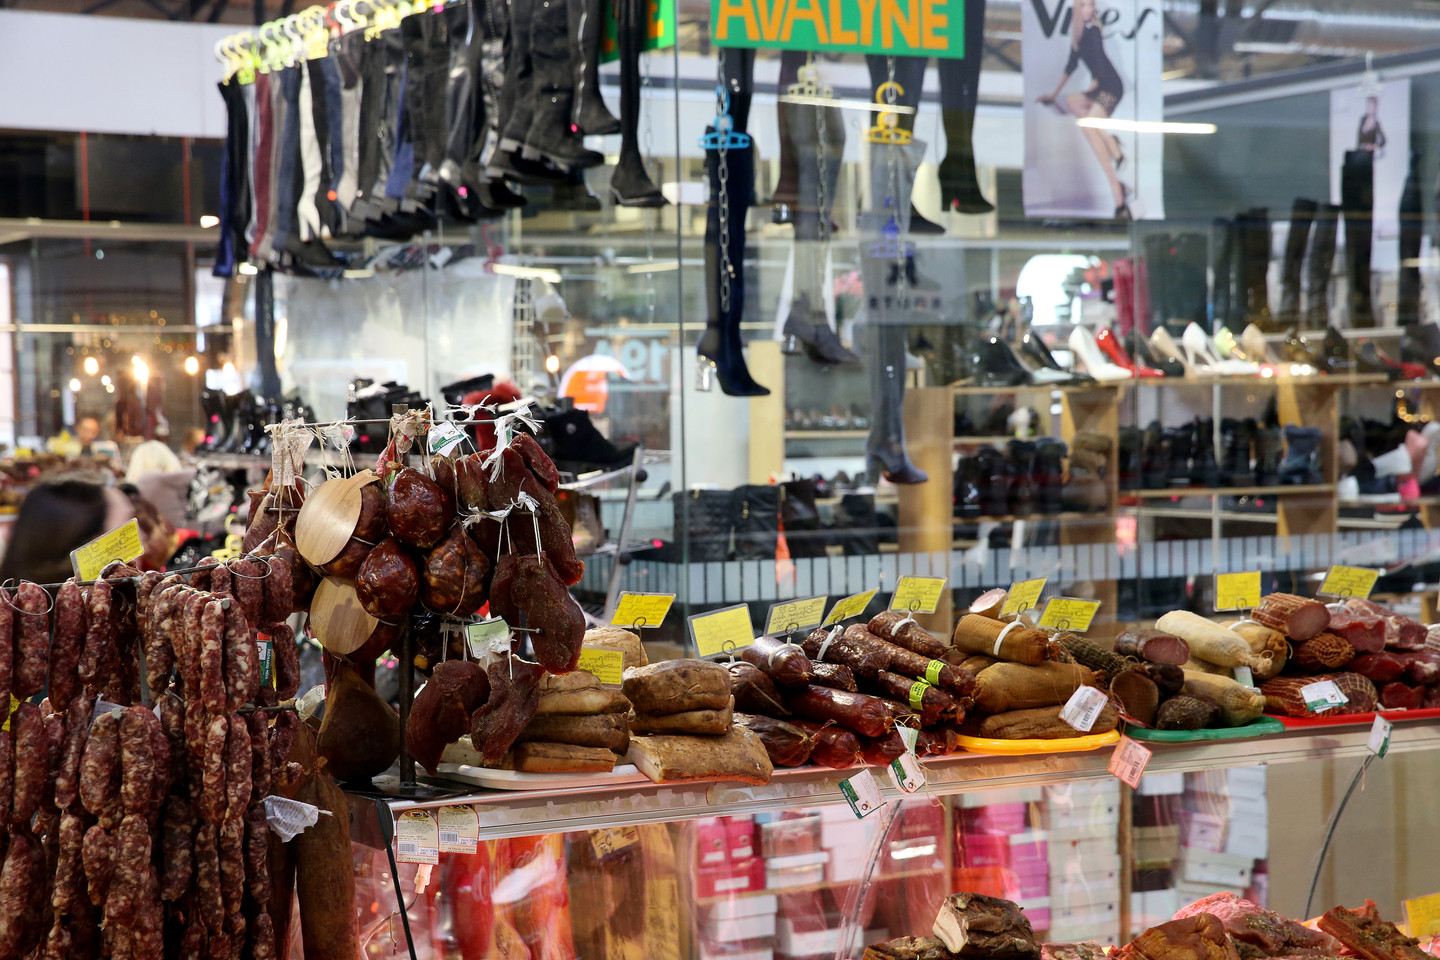  Halės turgų turistai galės aplankyti savarankiškai ir taip pažinti ne tik jau šimto metų Vilniaus turgaus istoriją, bet ir leistis į kulinarinę kelionę.<br> R.Danisevičiaus nuotr.